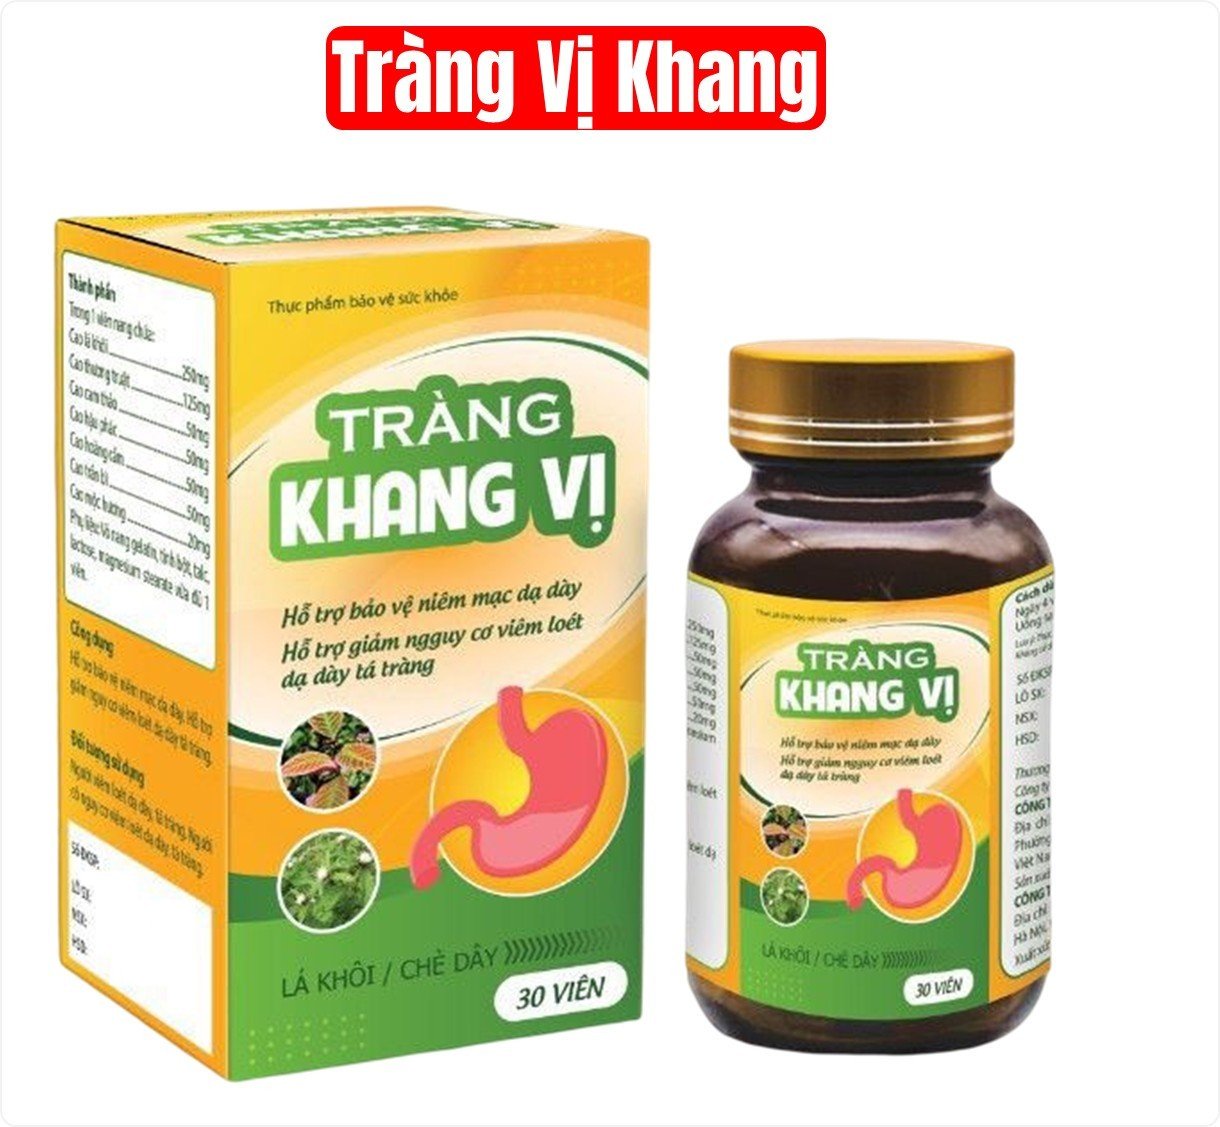 Viên uống Tràng Khang Vị giúp giảm các triệu chứng của co thắt đại tràng